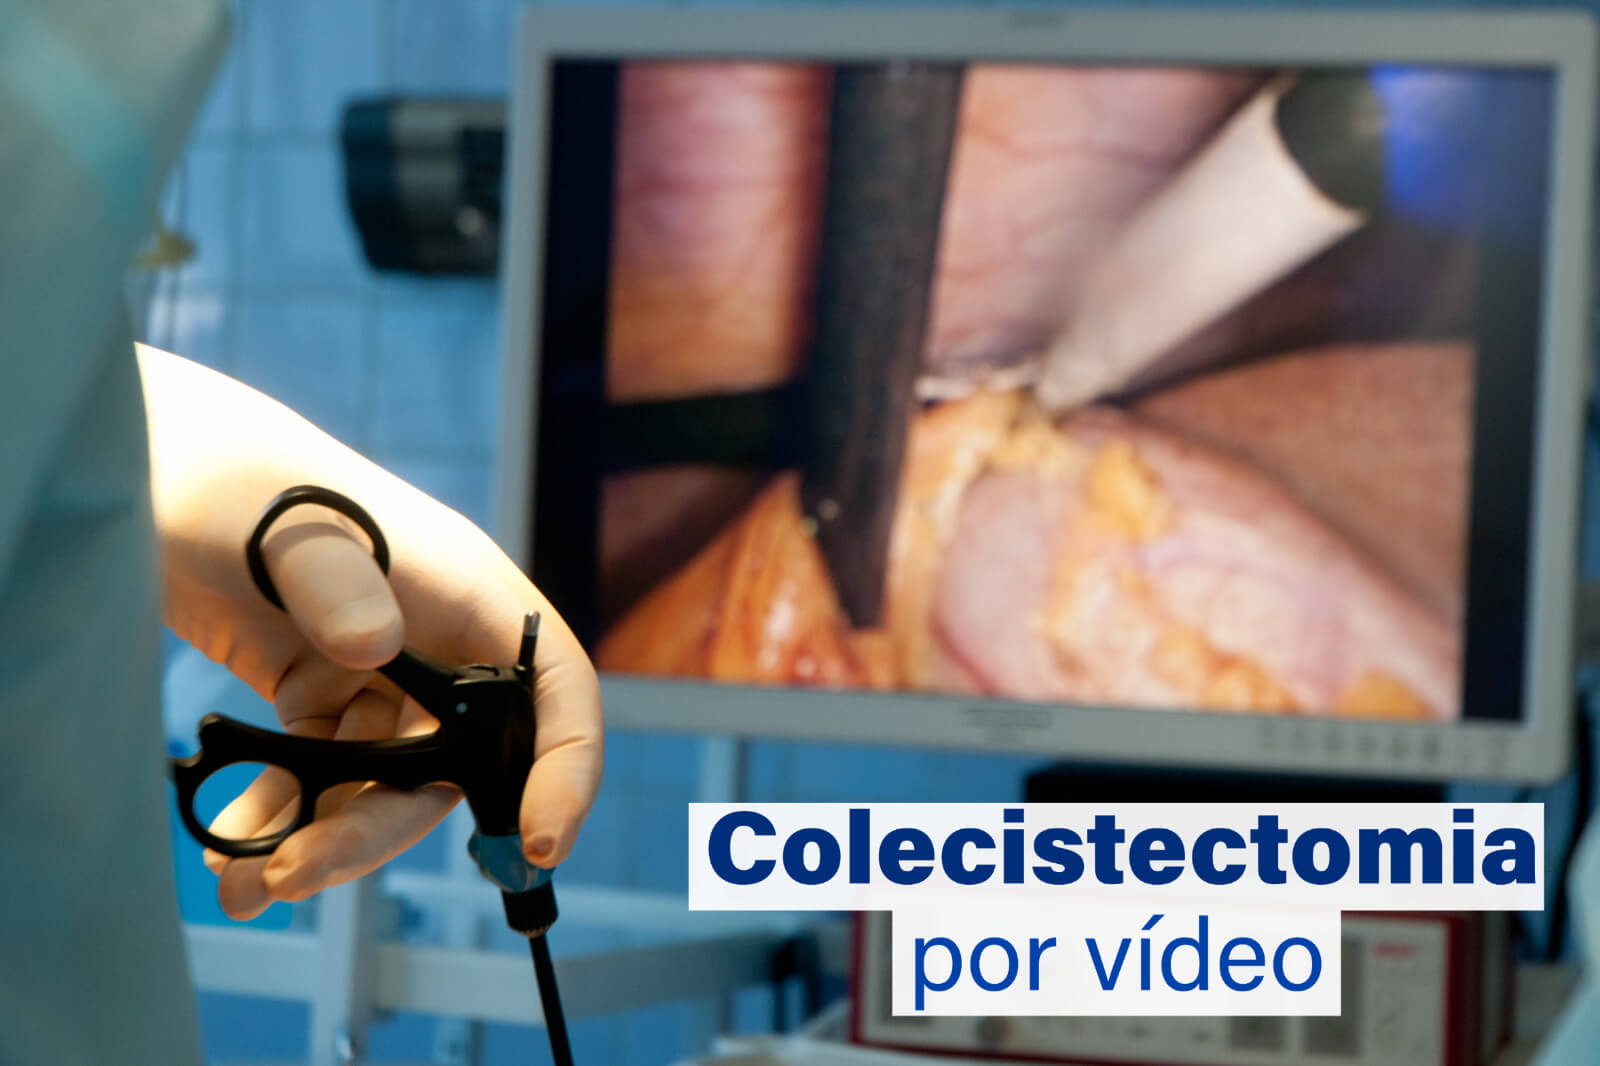 Colecistectomia por vídeo